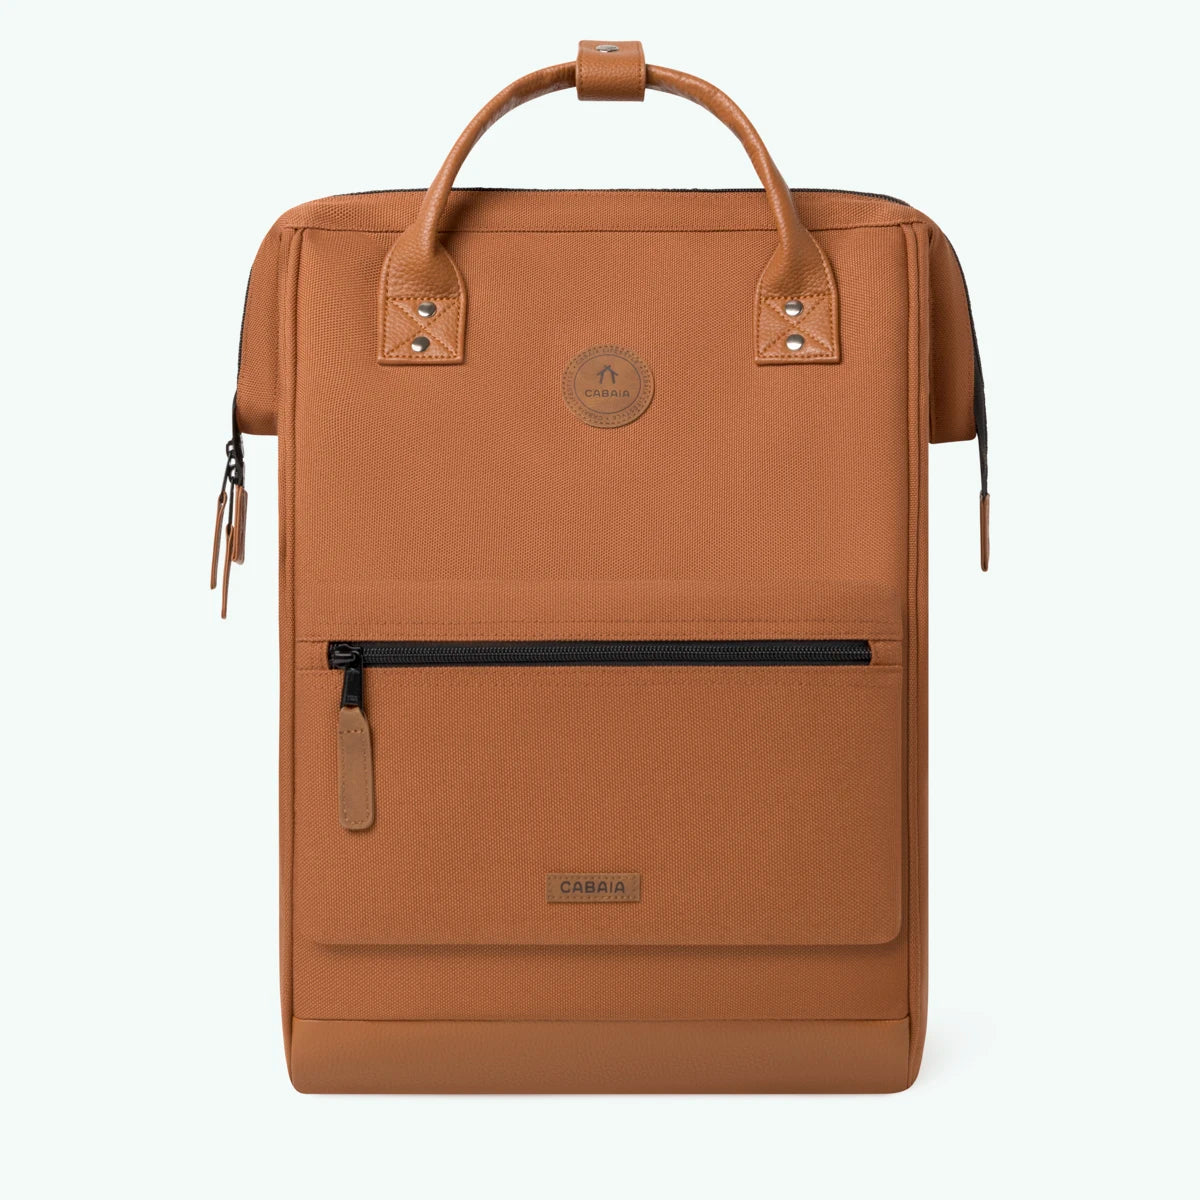 adventurer-brown-maxi-backpack-1-pocket